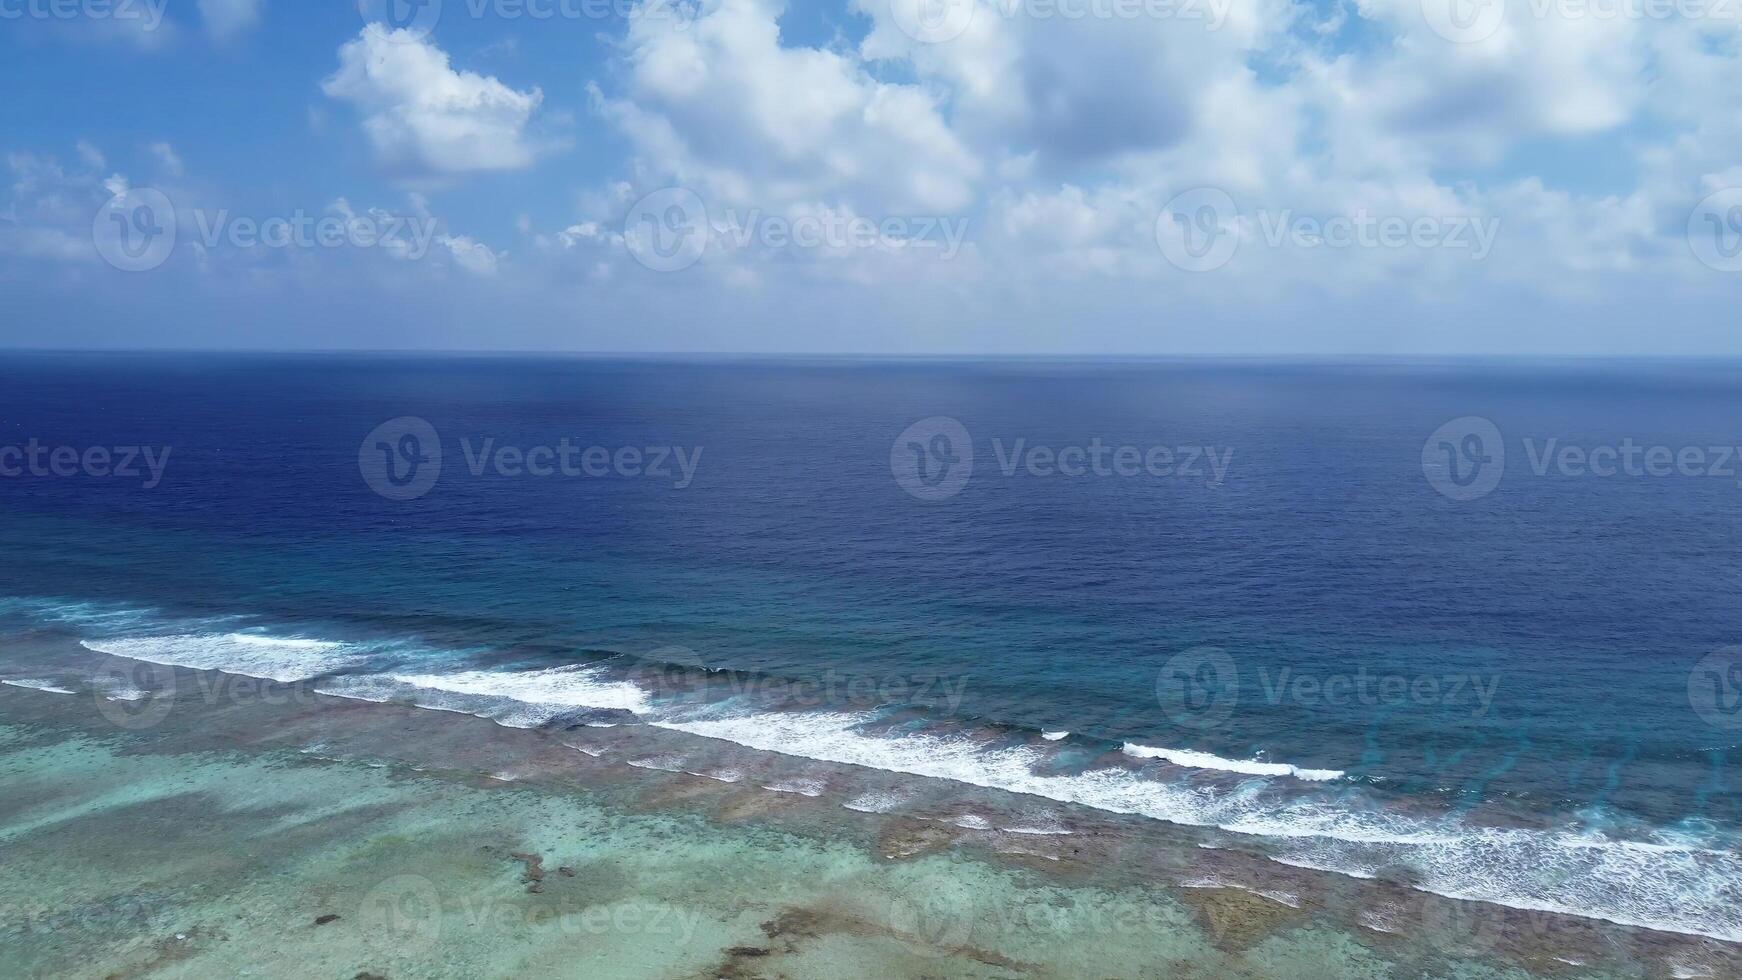 fuco Visualizza di Paradiso isole di il Maldive con corallo barriere sotto il onde di blu il indiano oceano. foto